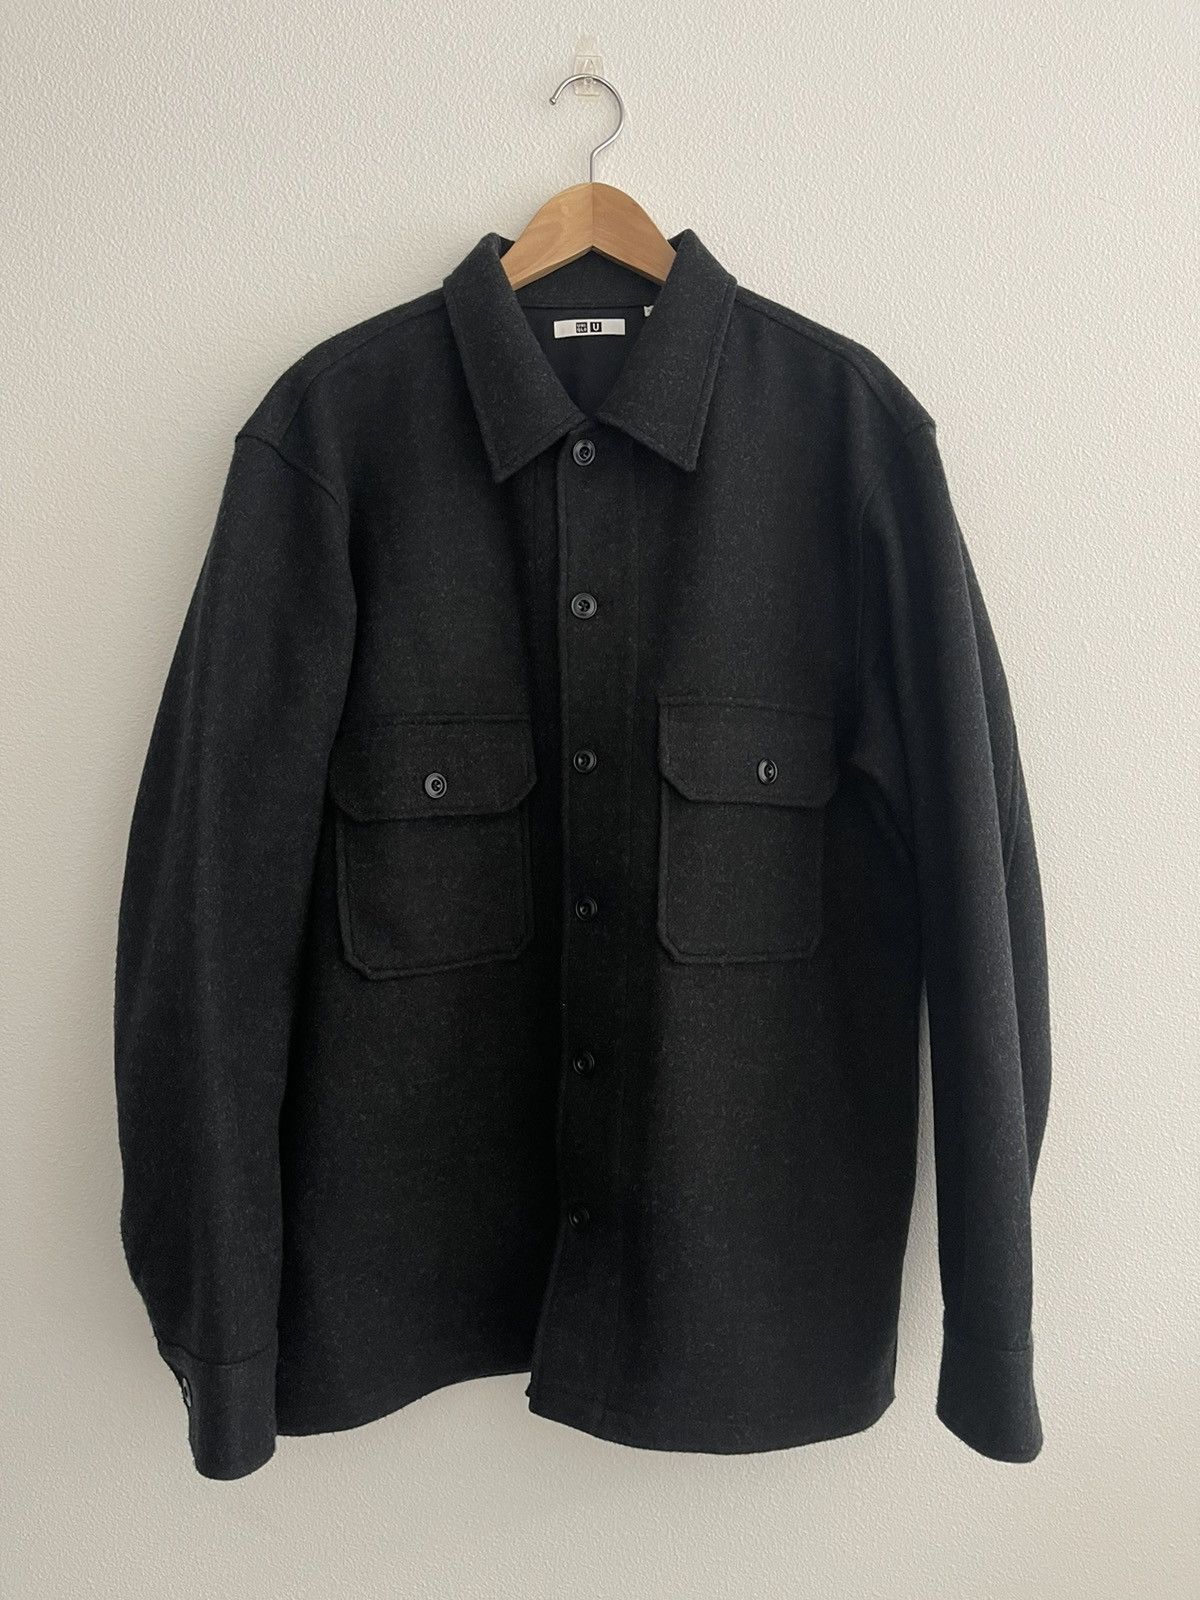 Pre-owned Lemaire X Uniqlo U Fw19 Overshirt Jacket Grey Size Large